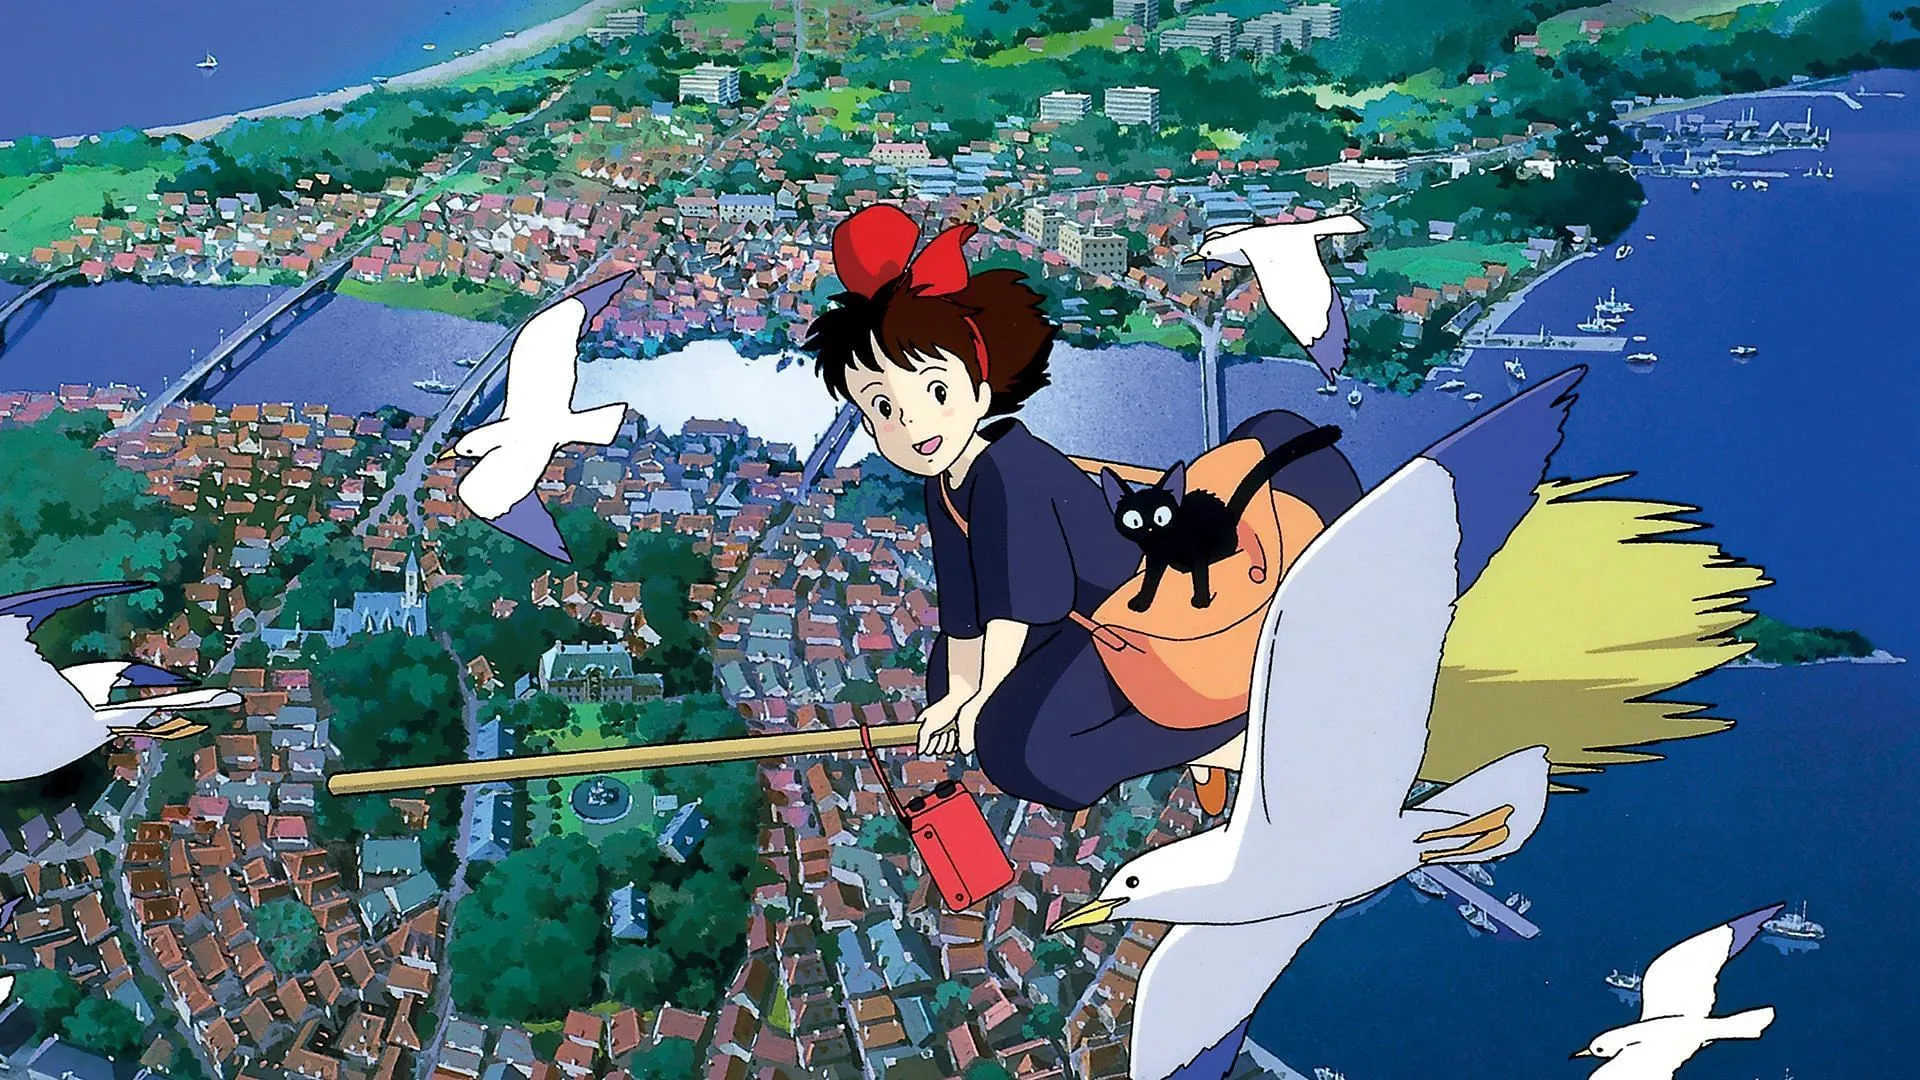 Kikis kleiner Lieferservice (Bild über Studio Ghibli)